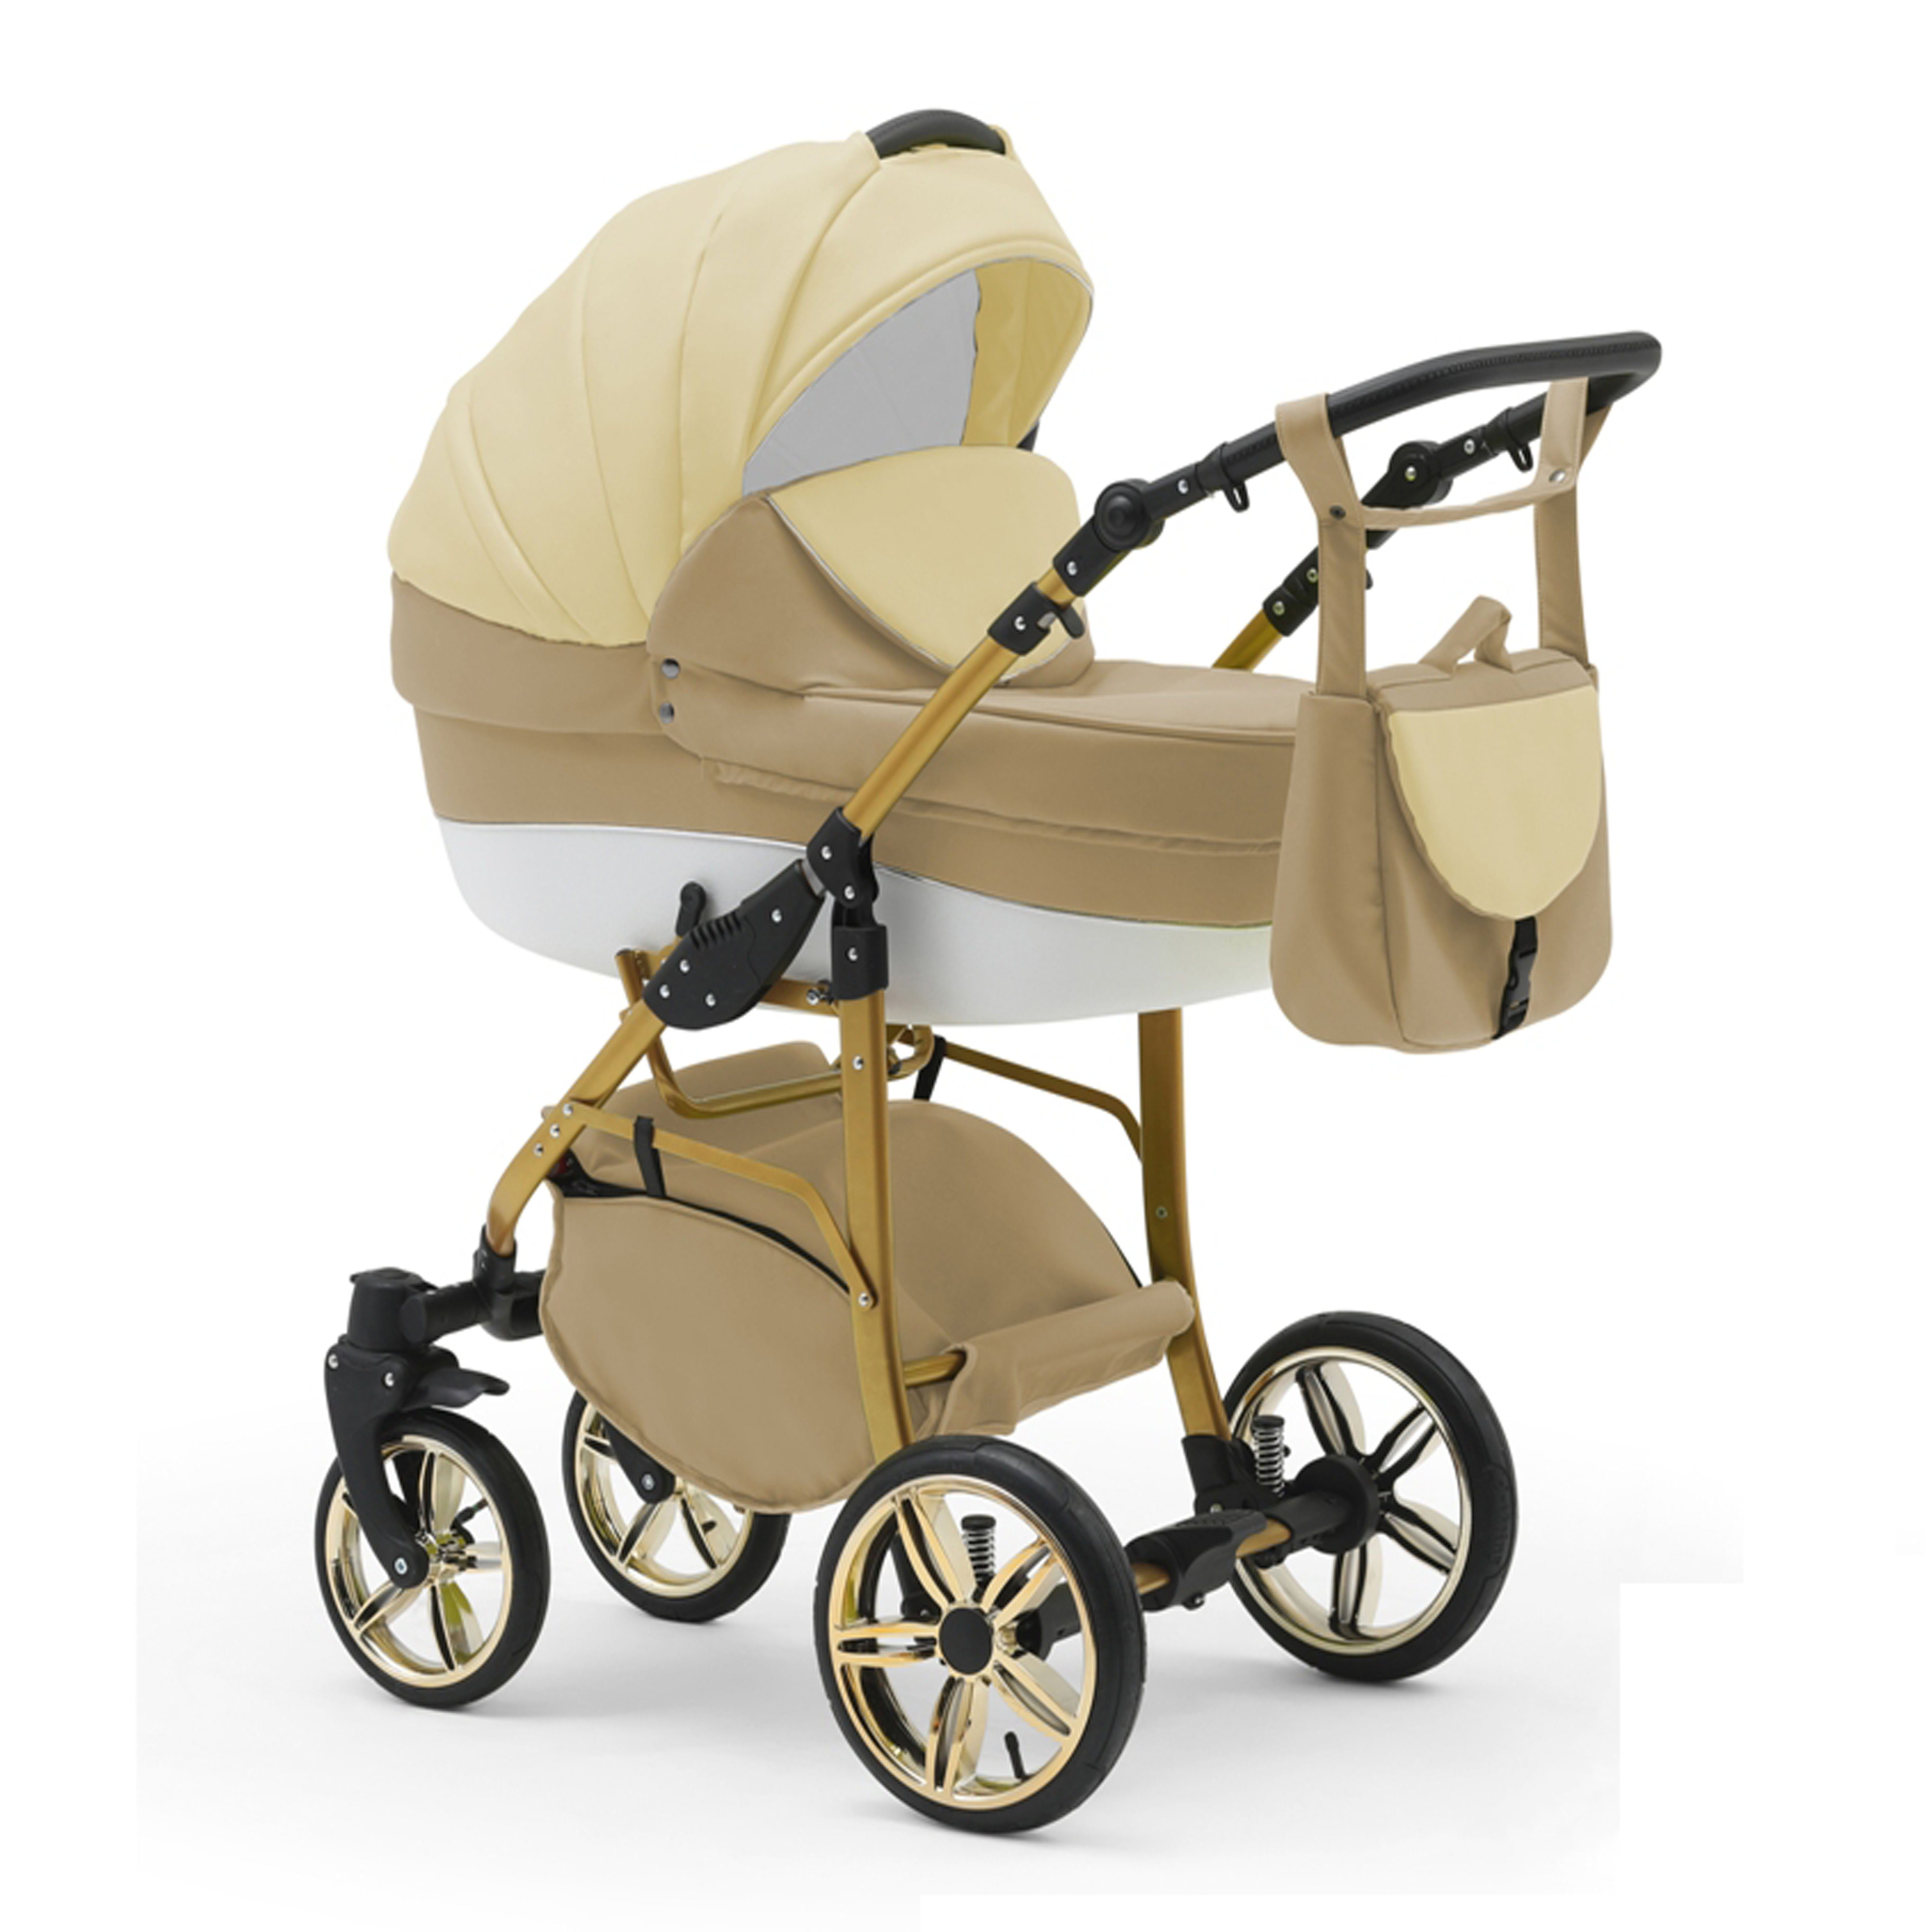 babies-on-wheels Kombi-Kinderwagen 2 in 1 Kinderwagen-Set Cosmo Gold - 13 Teile - in 46 Farben Beige-Creme-Weiß | Kombikinderwagen